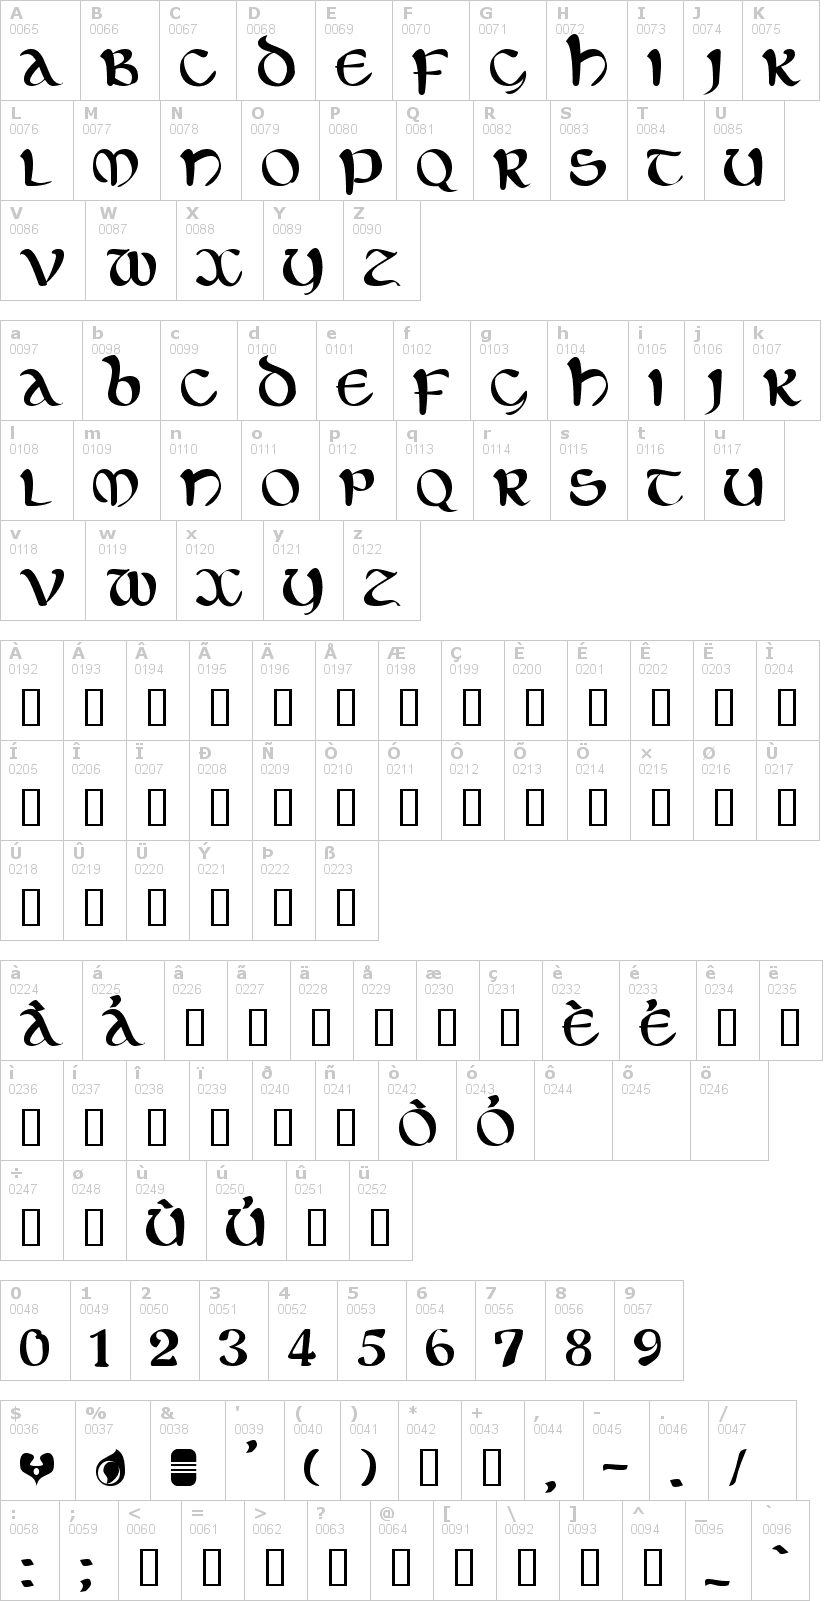 Lettere dell'alfabeto del font eltic con le quali è possibile realizzare adesivi prespaziati